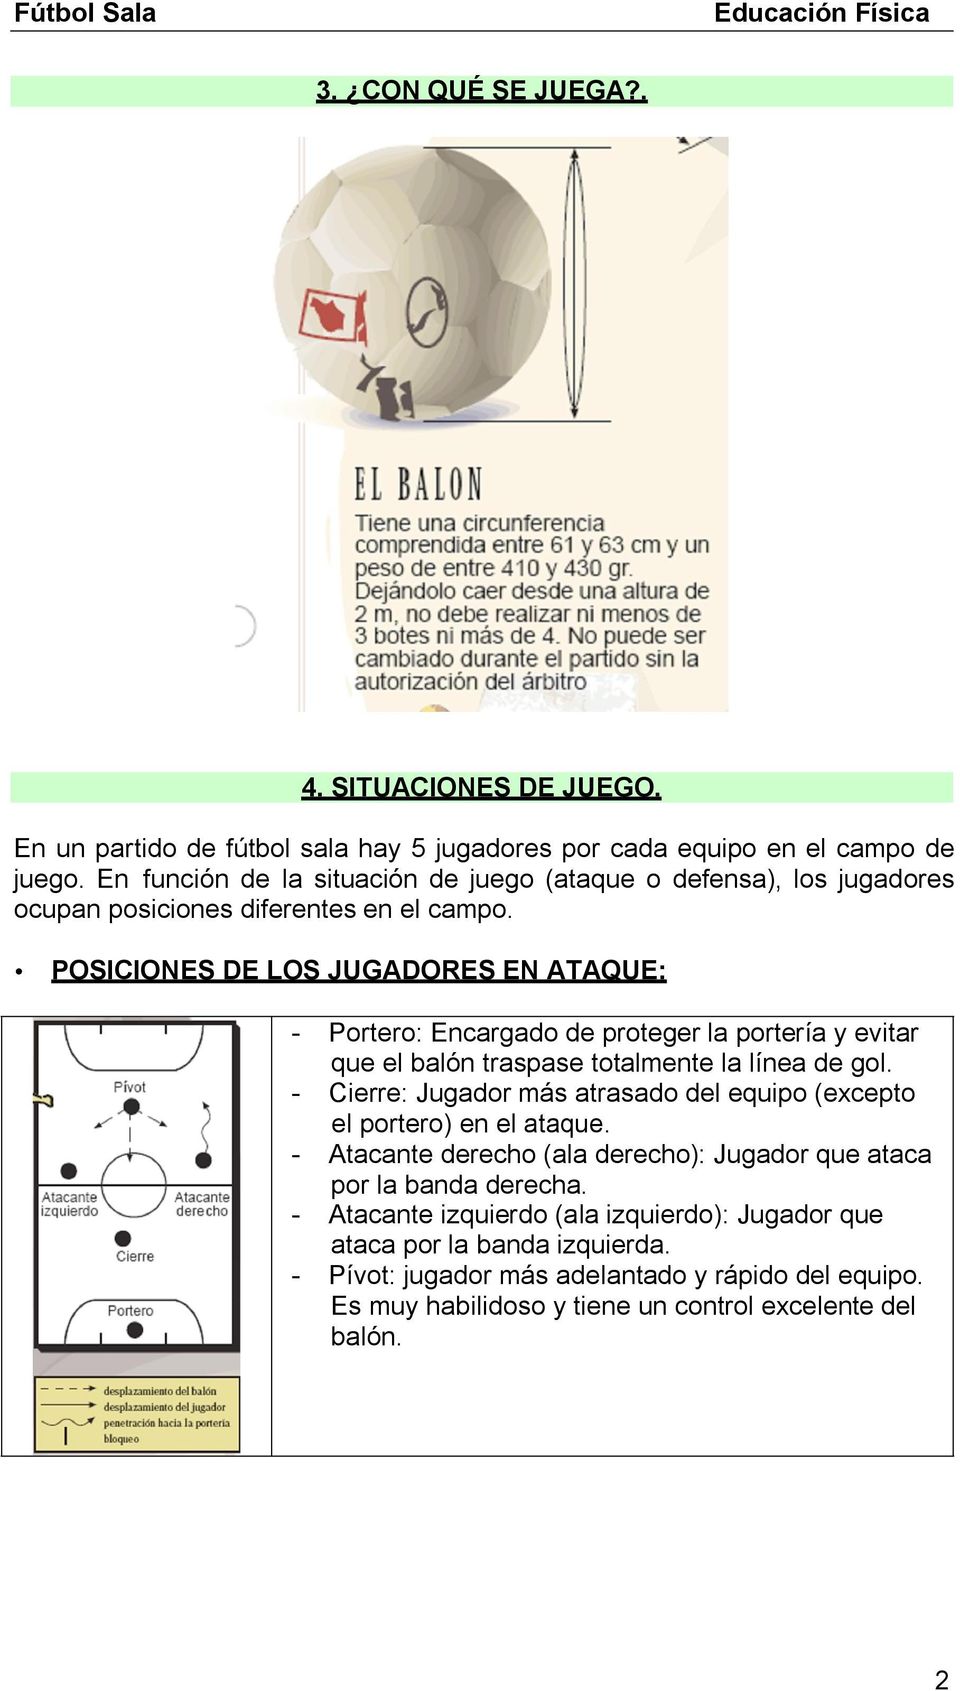 POSICIONES DE LOS JUGADORES EN ATAQUE: - Portero: Encargado de proteger la portería y evitar que el balón traspase totalmente la línea de gol.